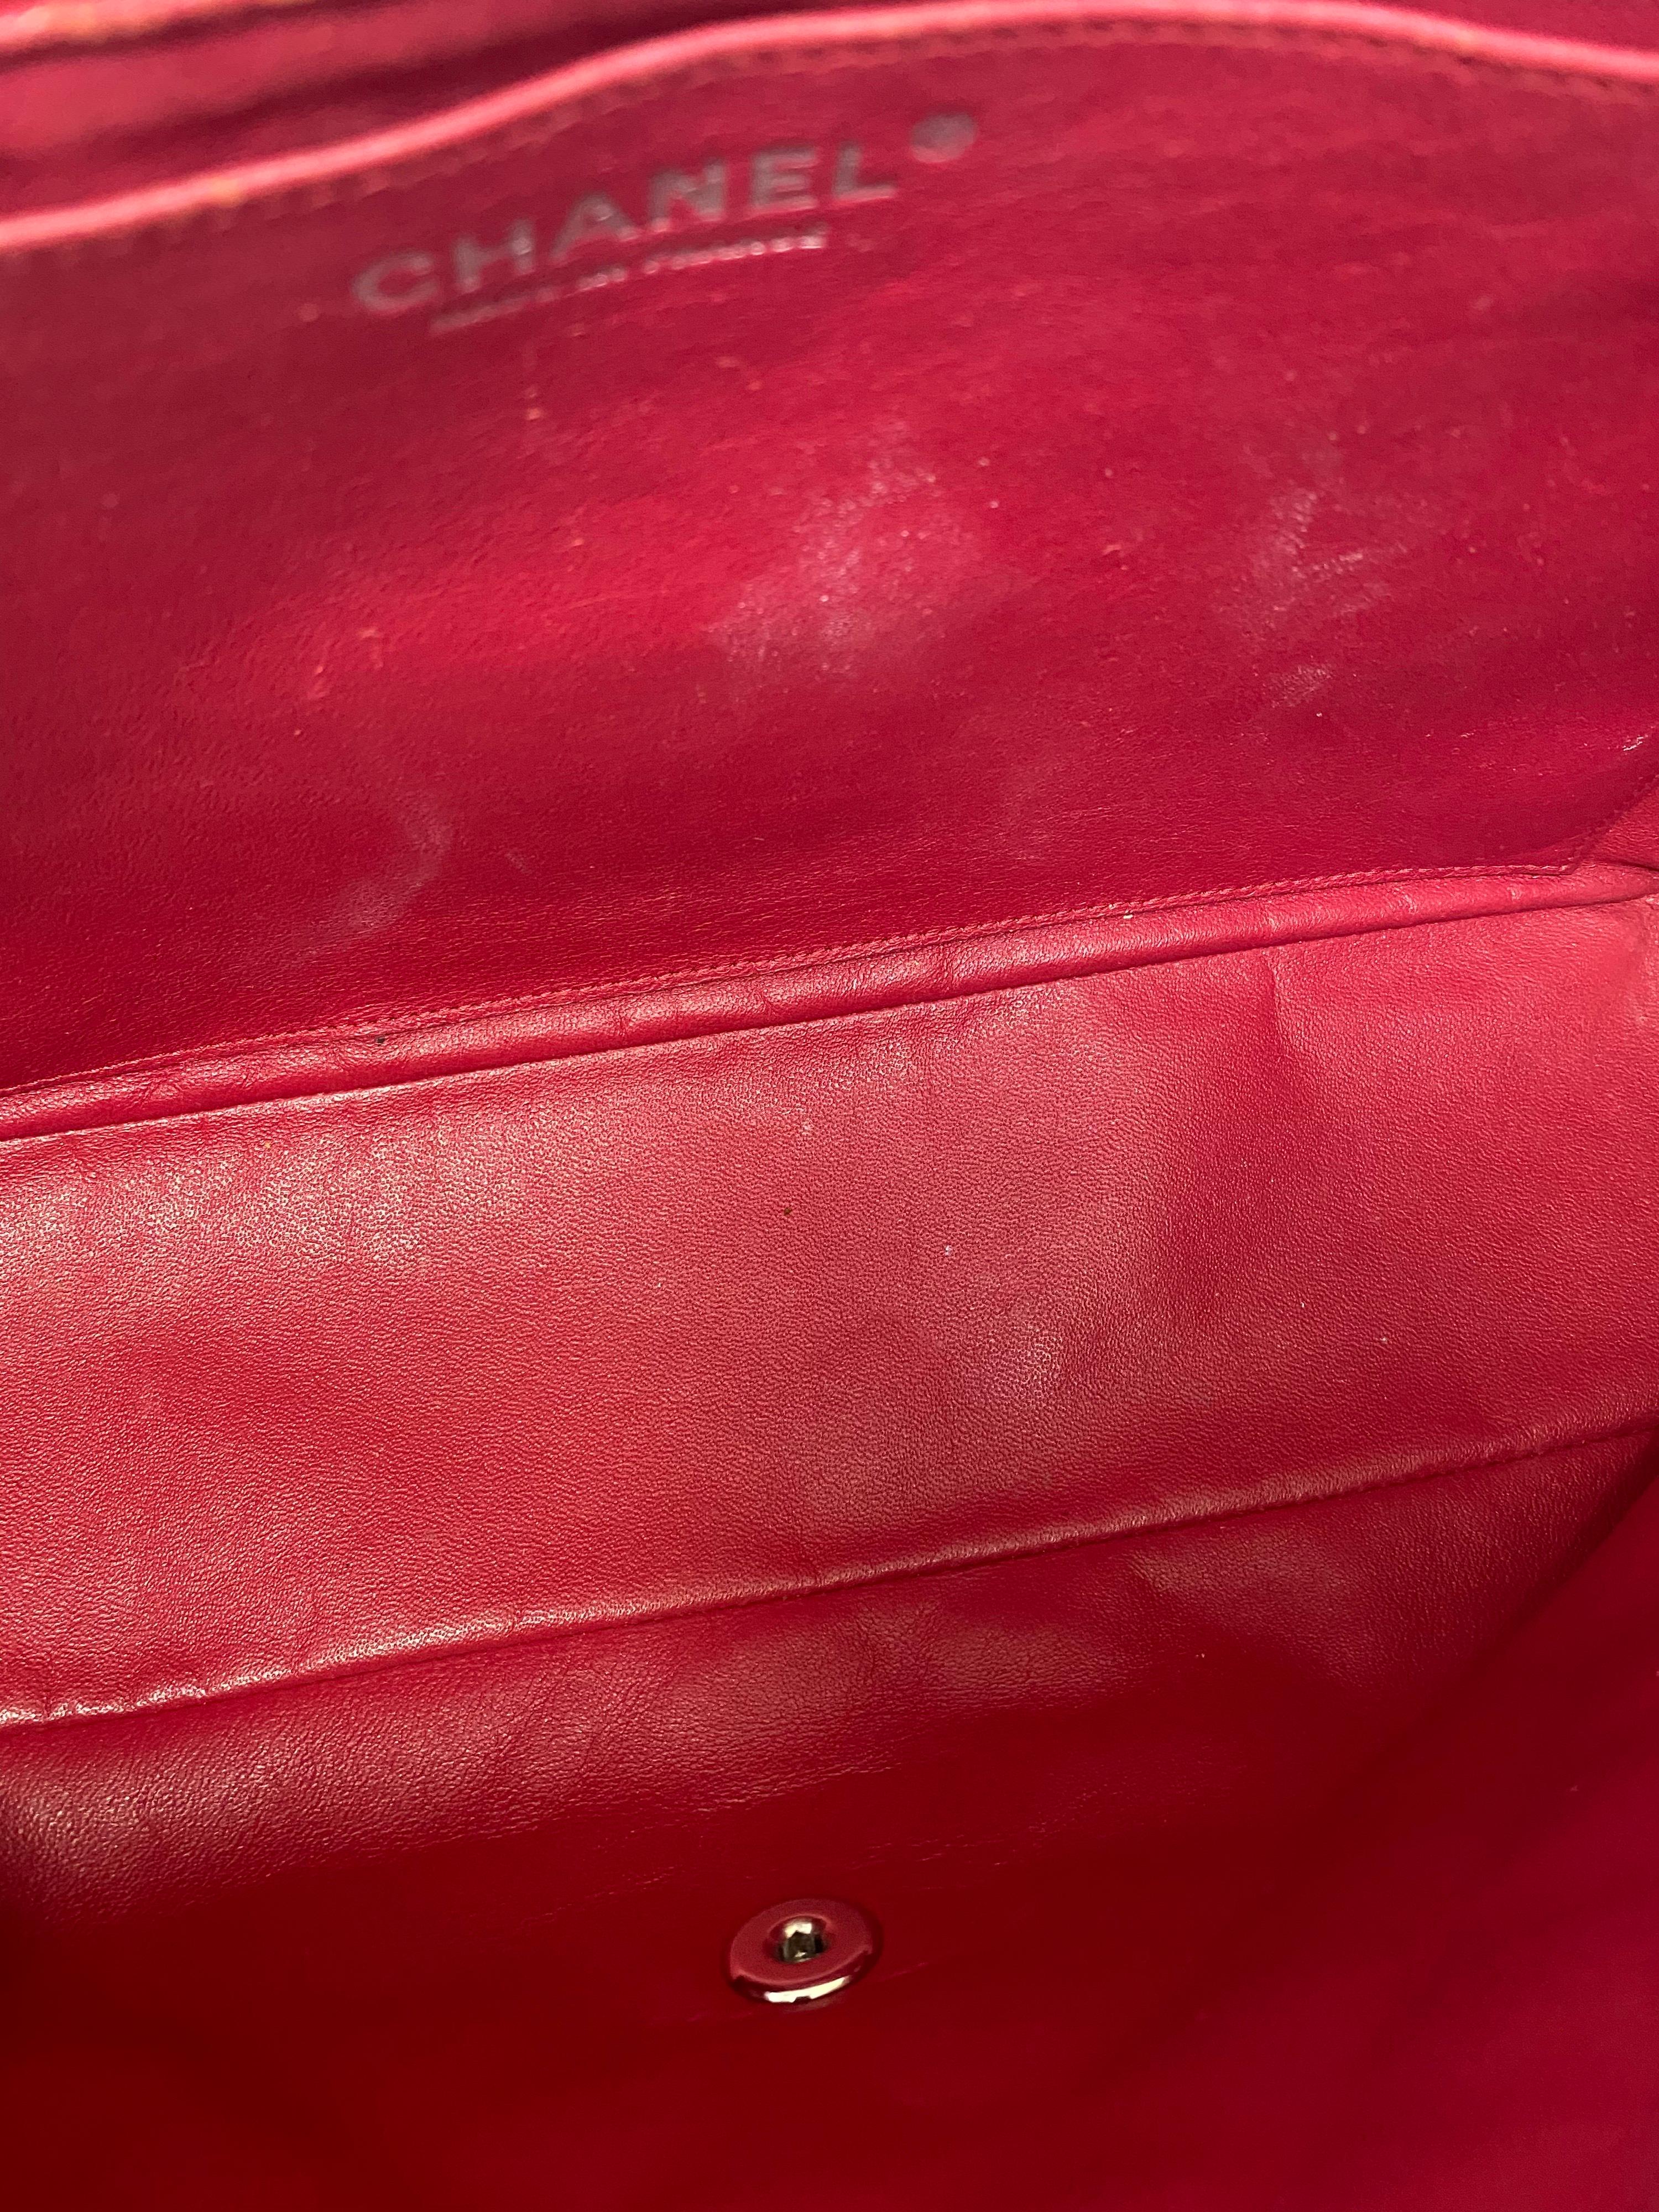 Chanel Pink Leather Maxi Jumbo Bag 3